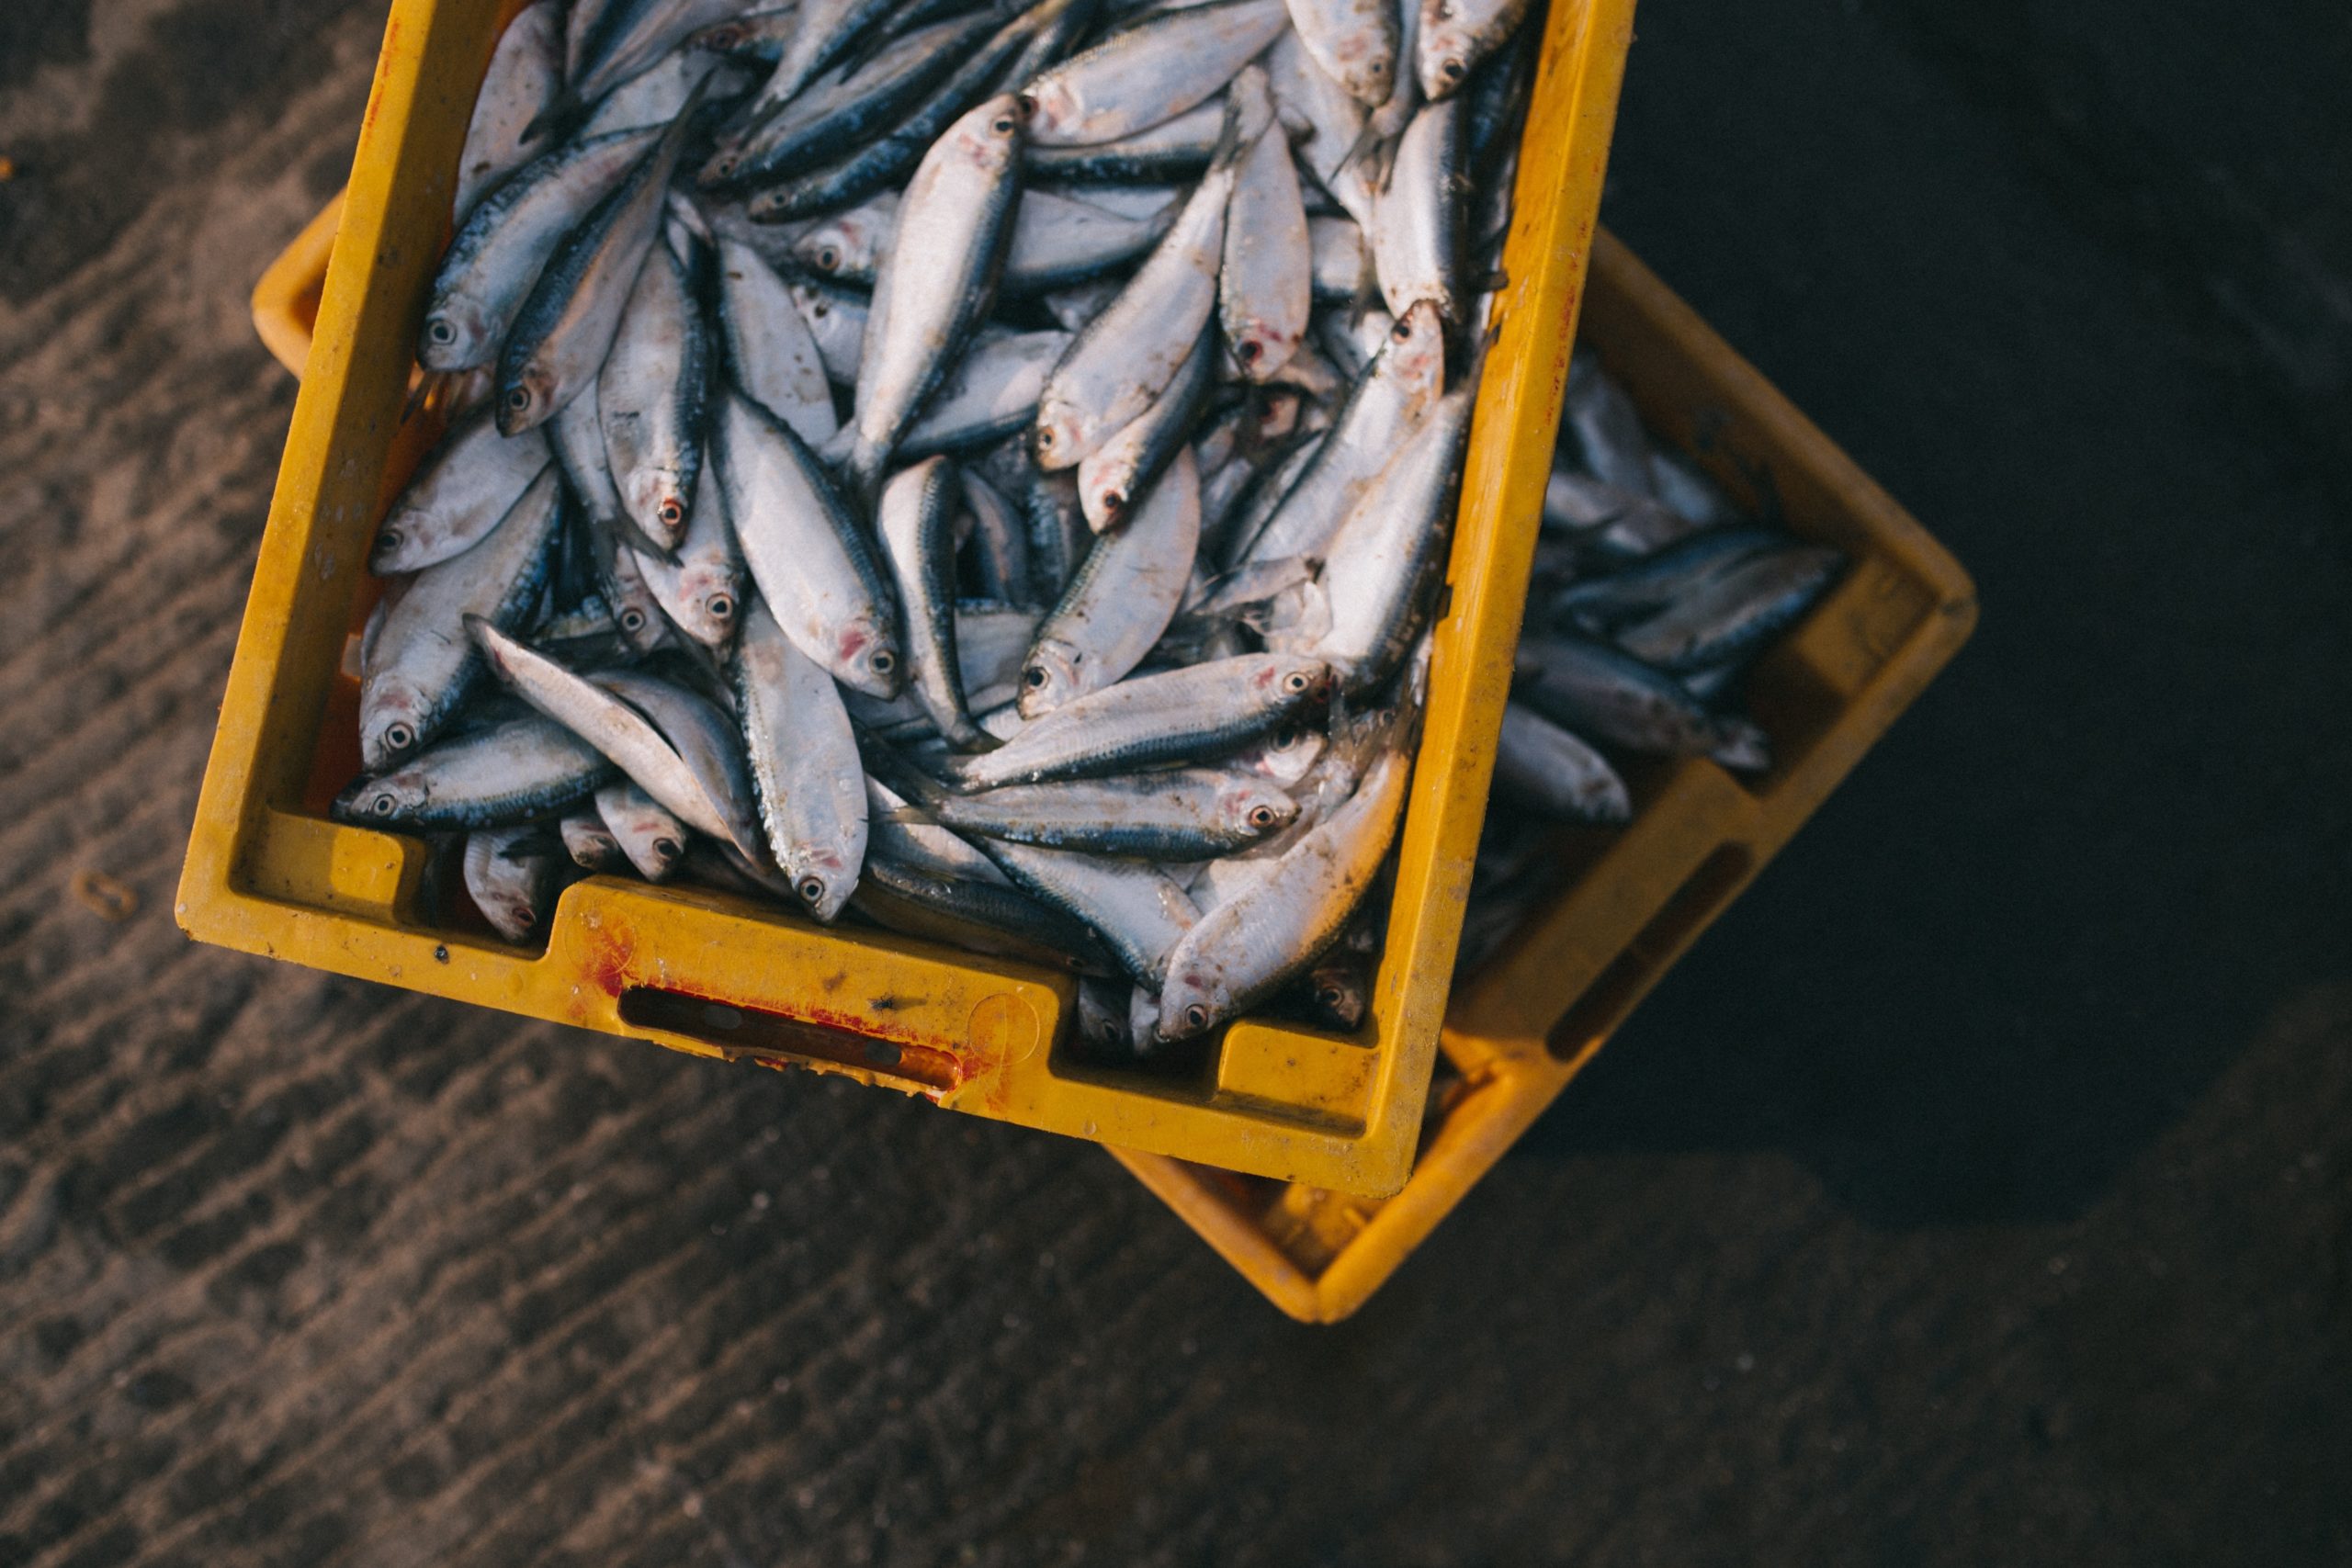 PensamENTs de novembre sobre malbaratament alimentari en productes de pesca